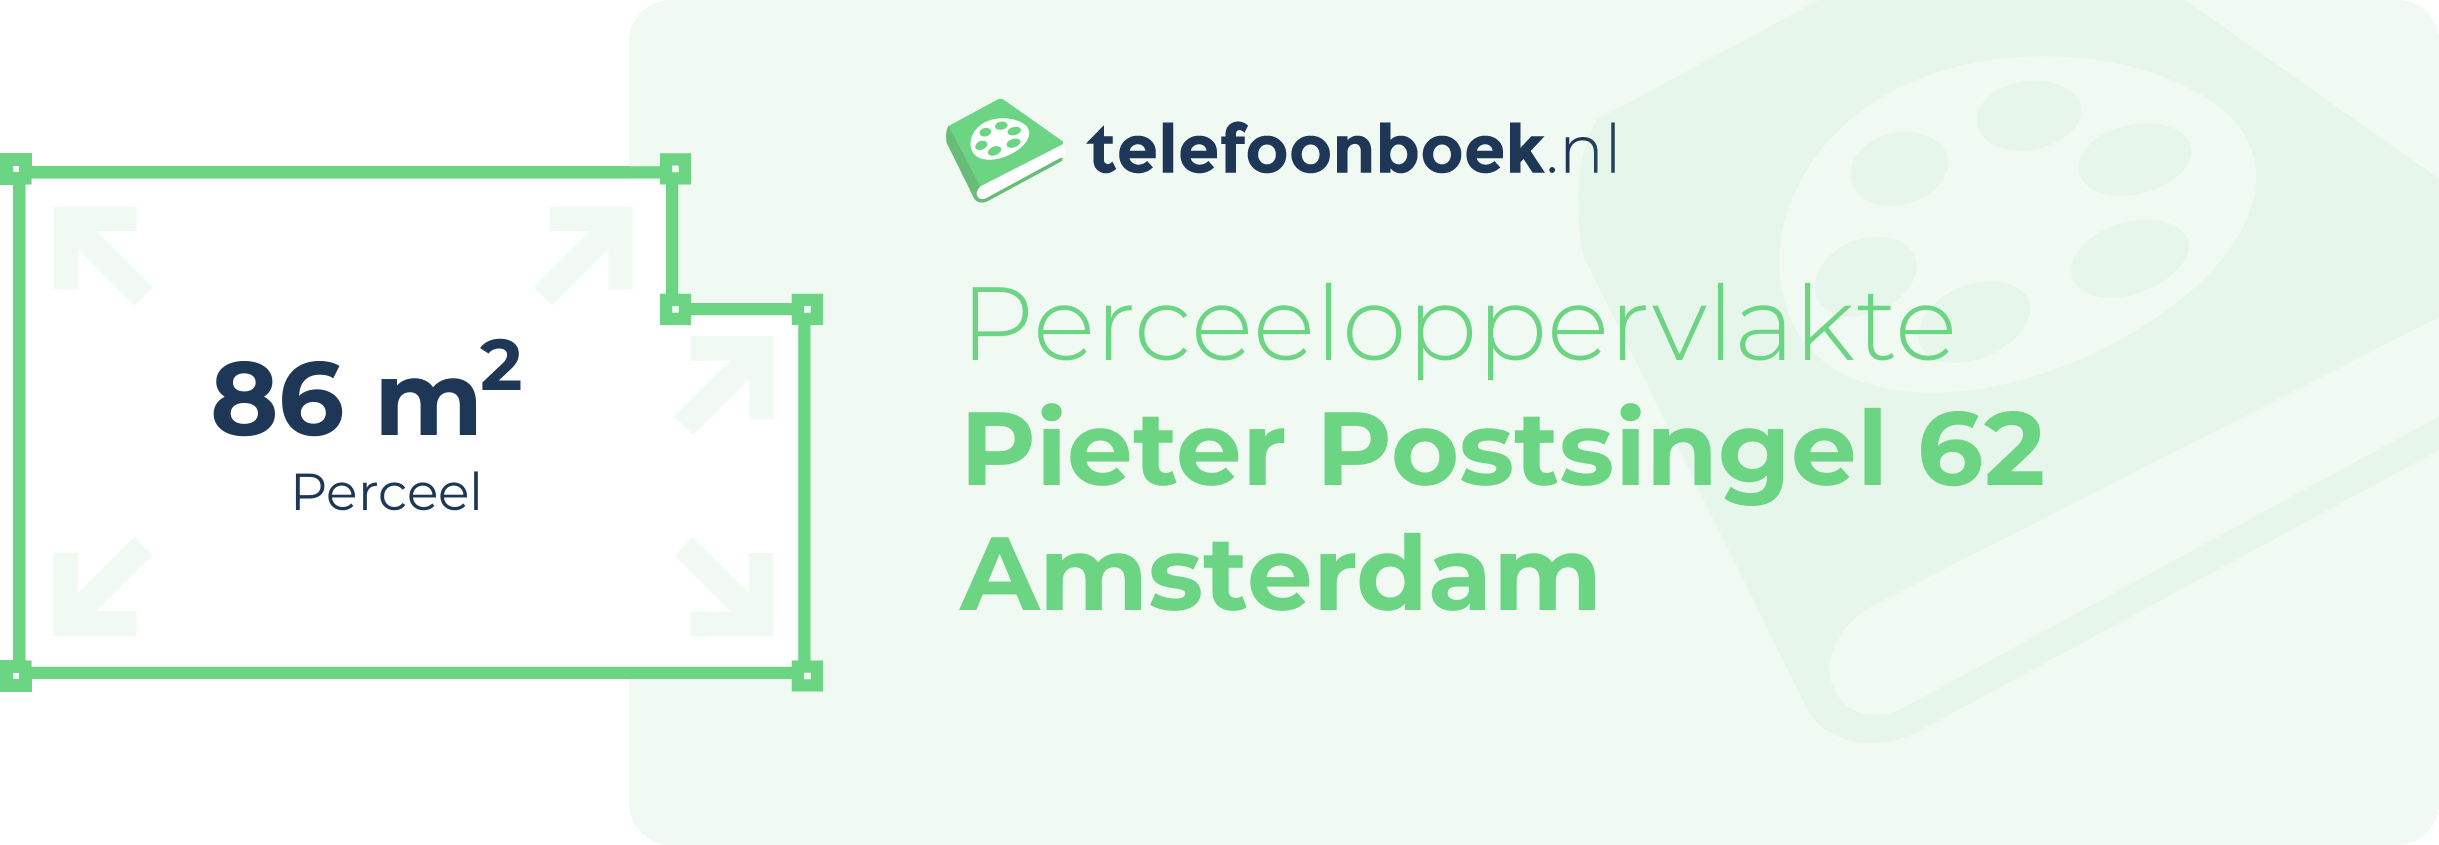 Perceeloppervlakte Pieter Postsingel 62 Amsterdam